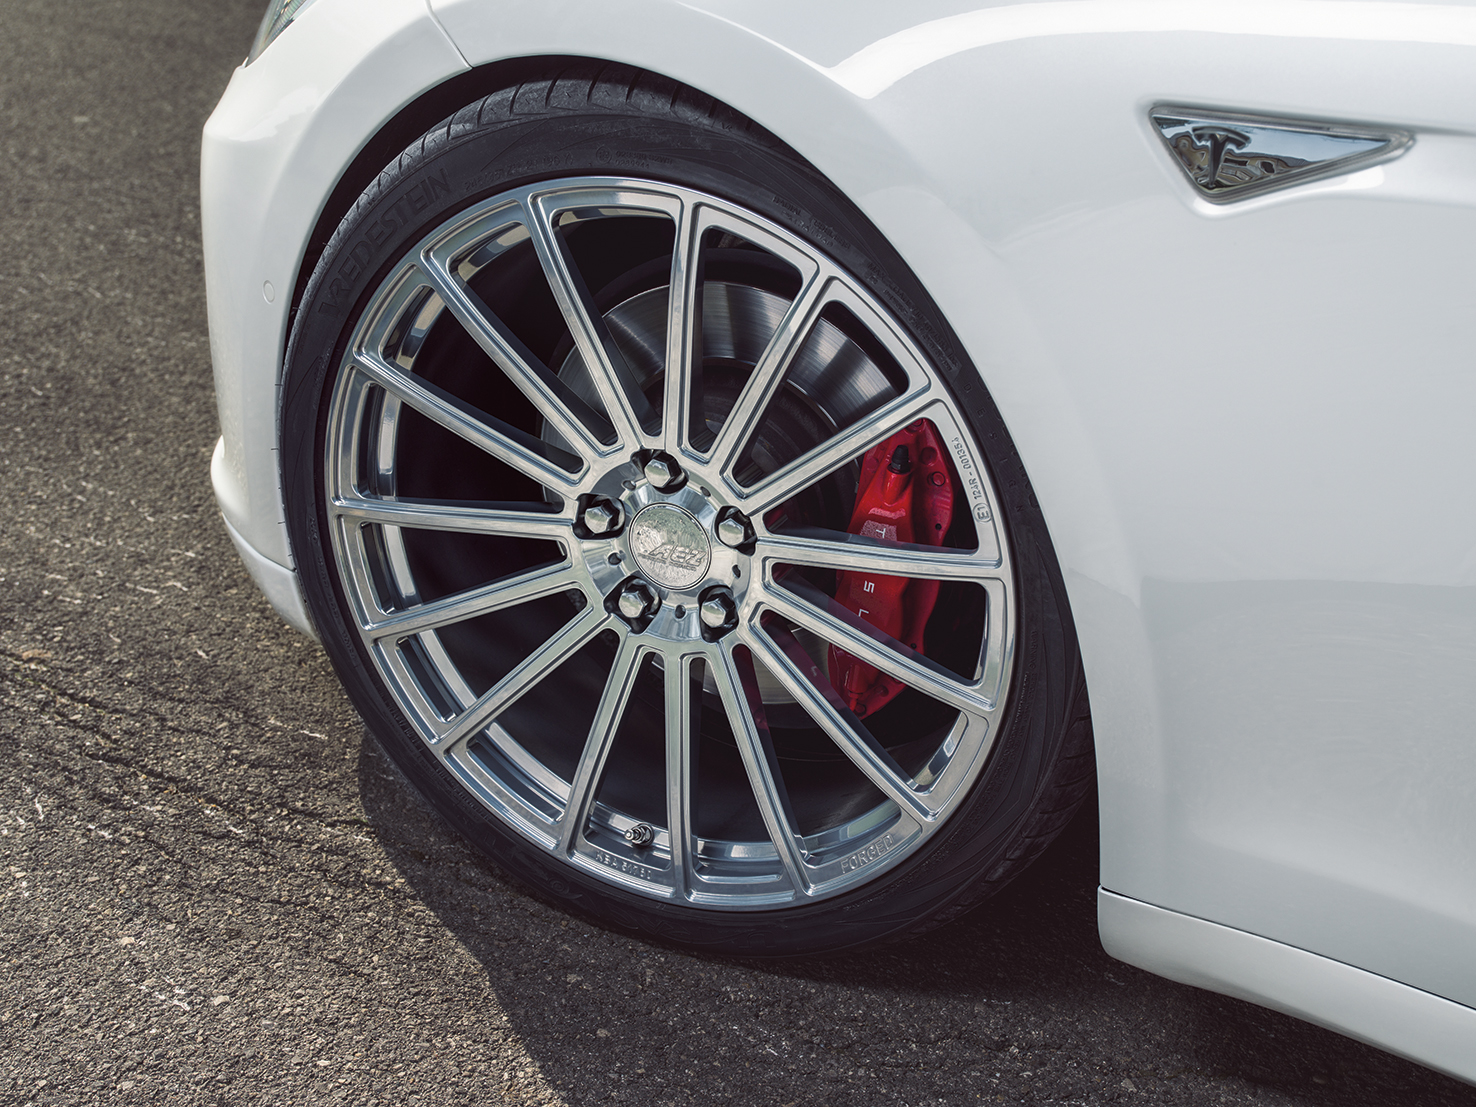 Sommerreifen kaufen Tipps - Kompletträder, Reifen inklusive Felgen für den Sommer bestellen - AEZ Steam forged Tesla Modell S